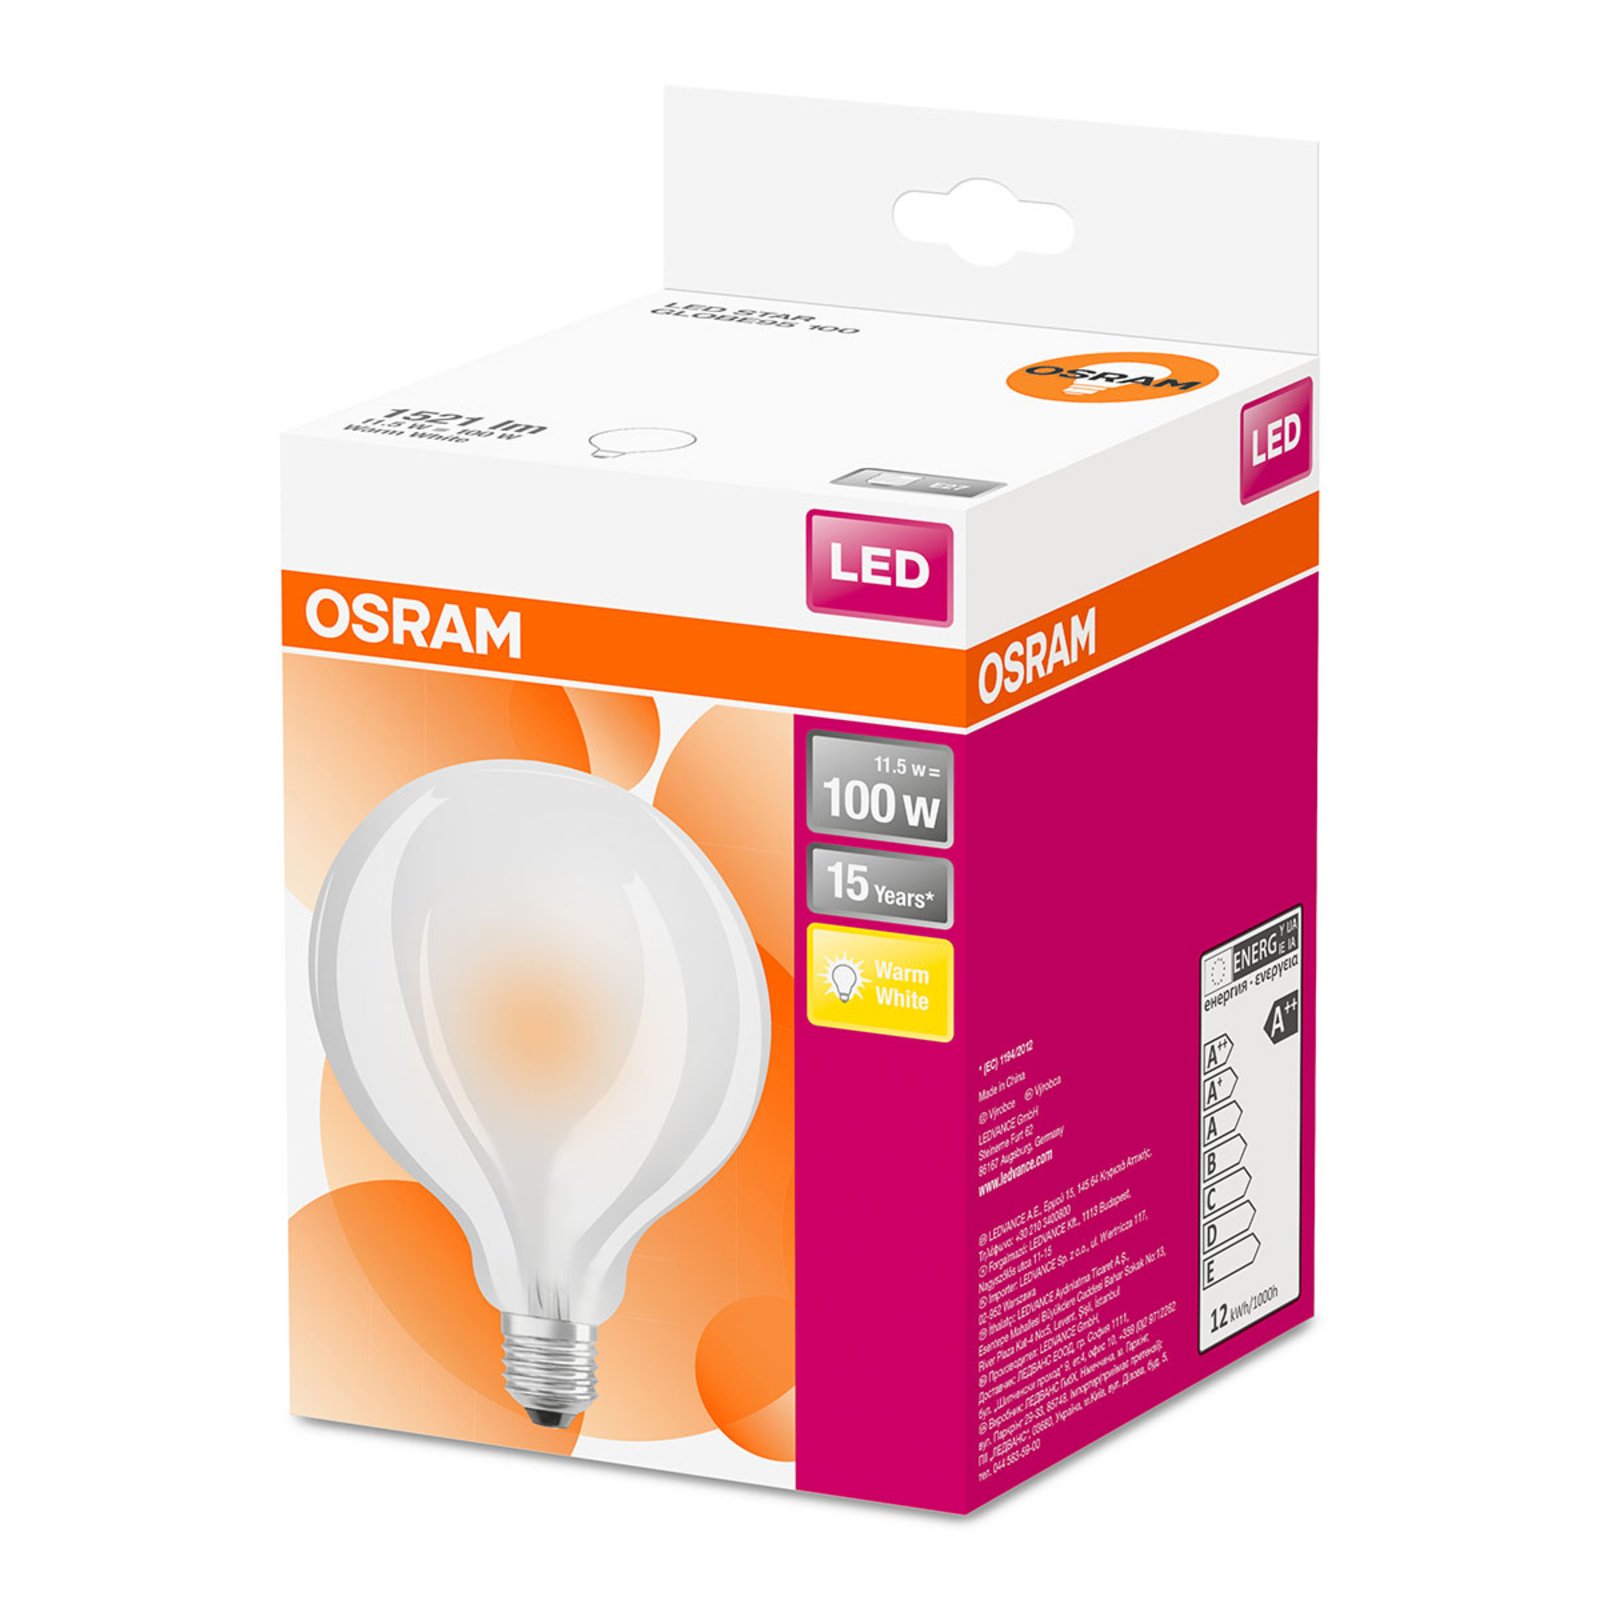 LED žárovka globe G95 E27 11W teplá bílá 1 521 lm